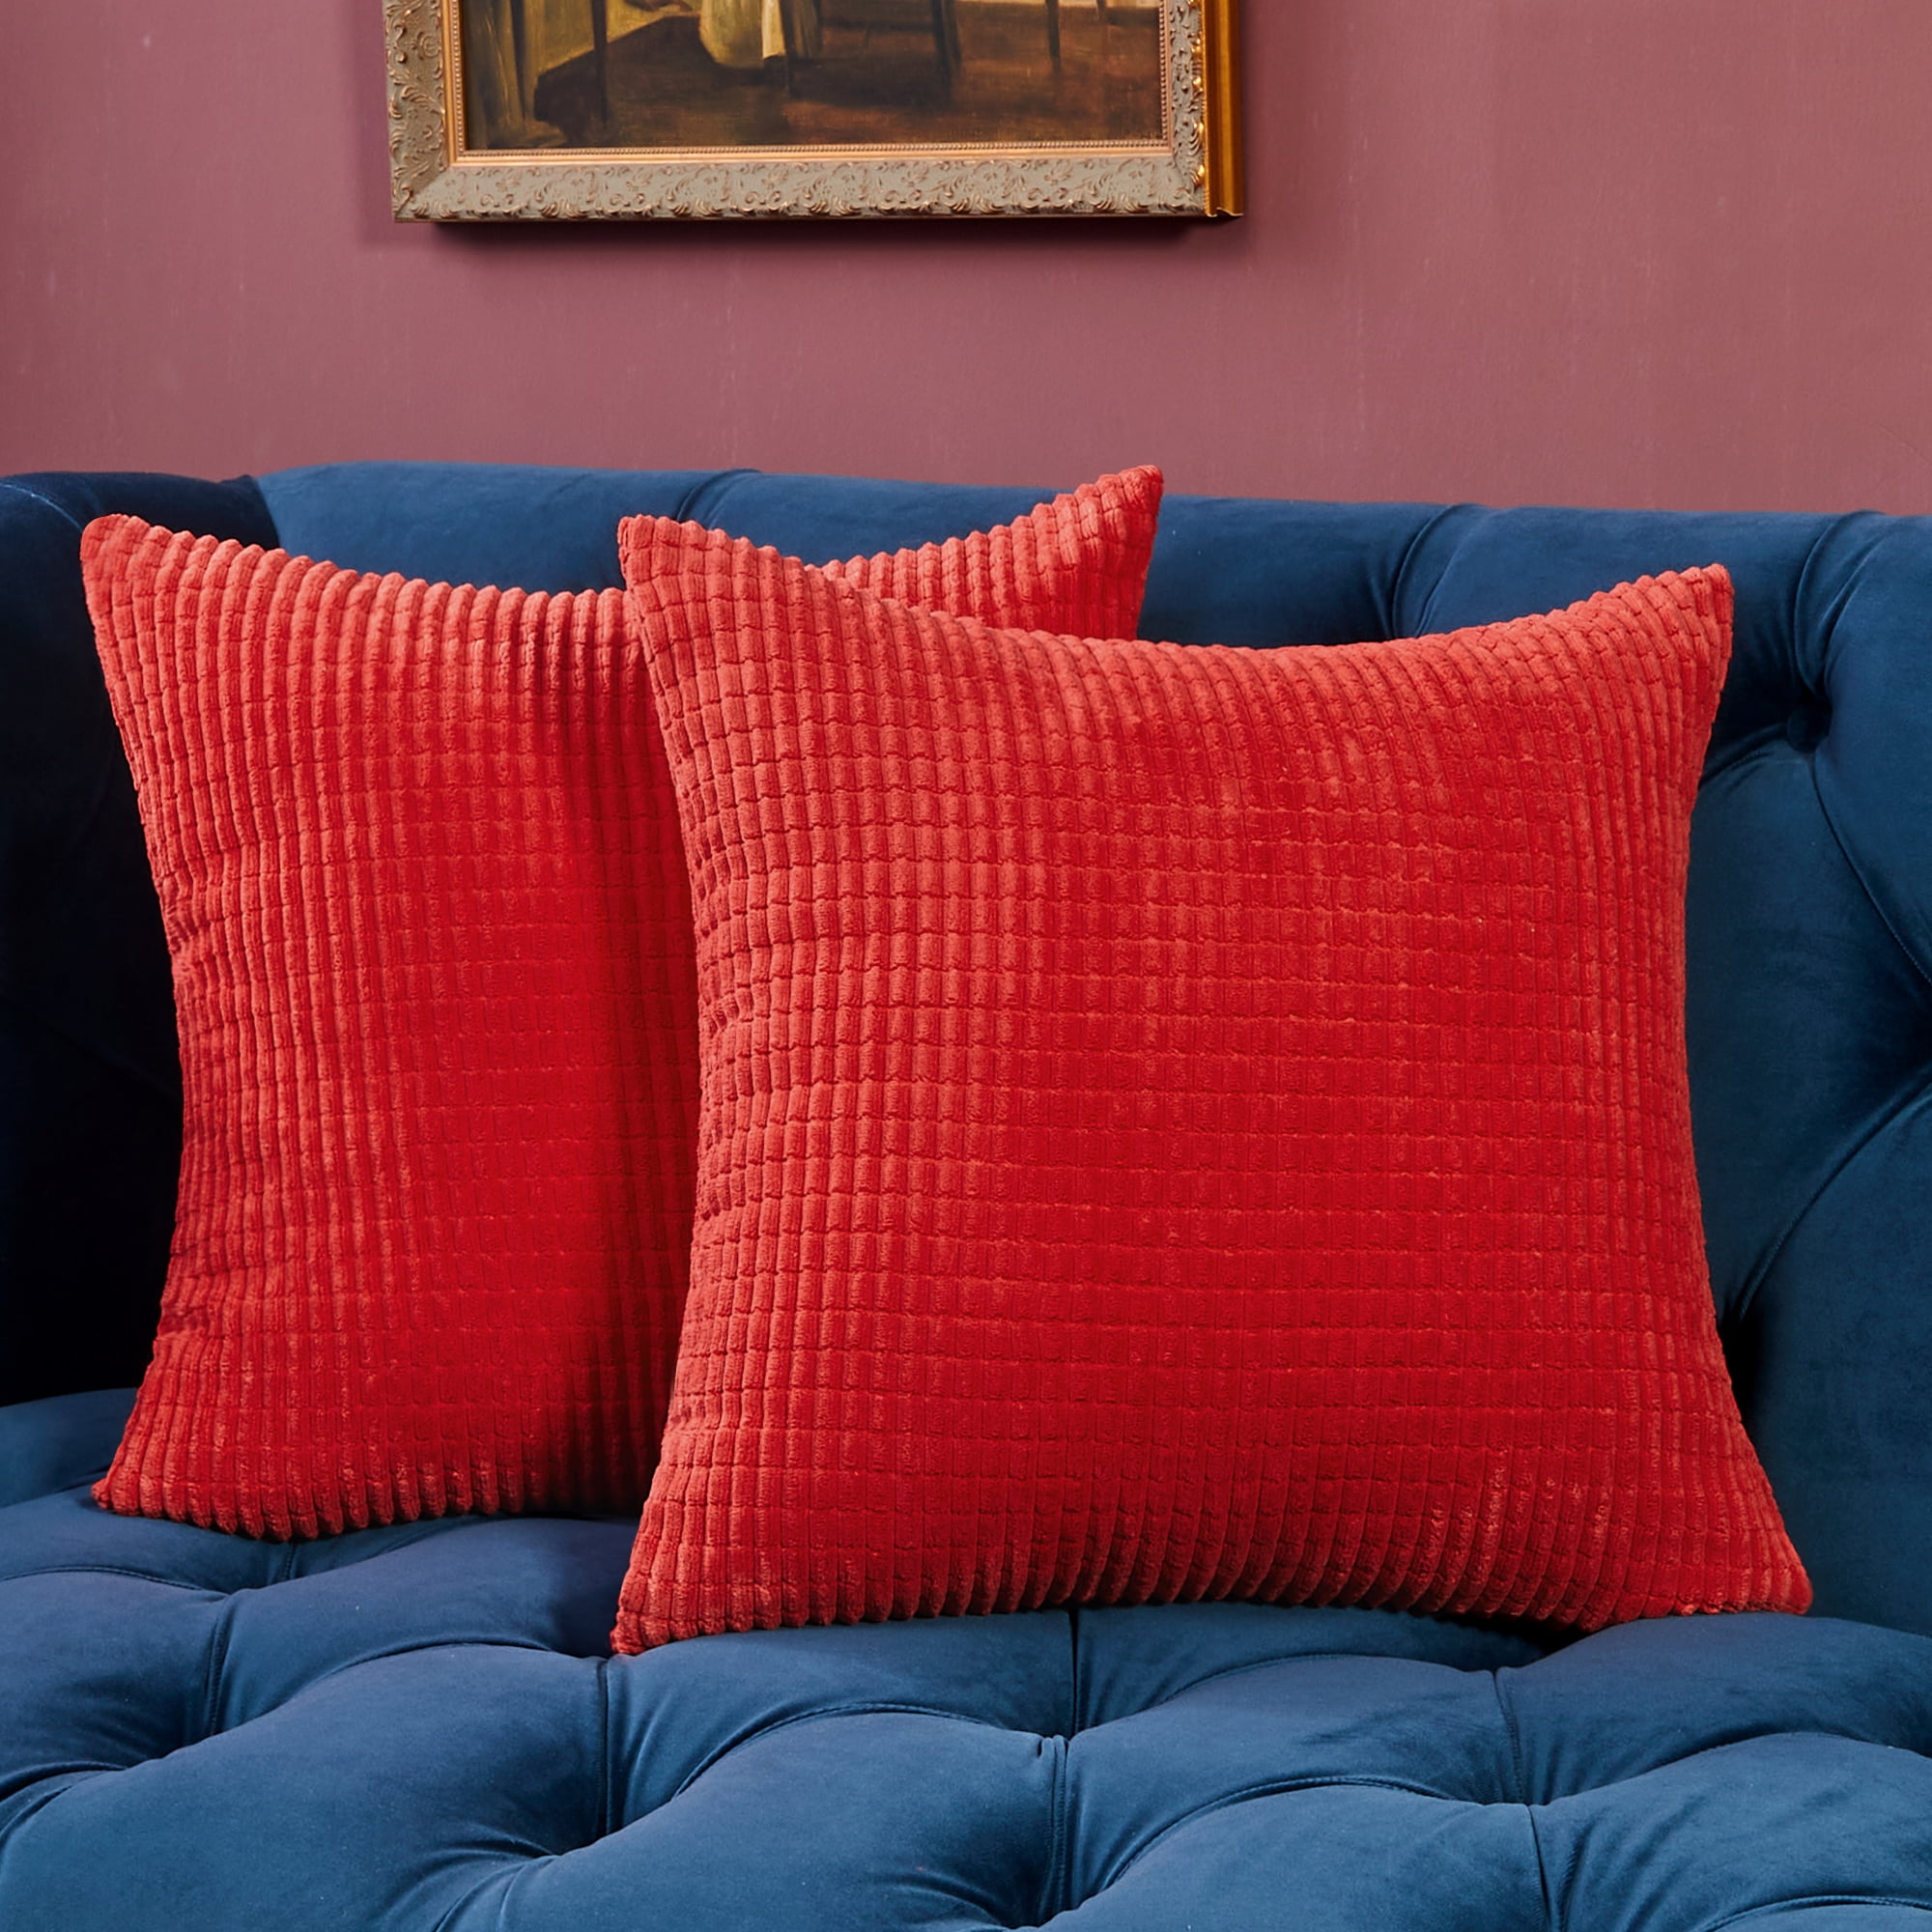 Red Geometric Pillow Case Sofa Car Waist Throw Cushion Cover Home Decor AU 